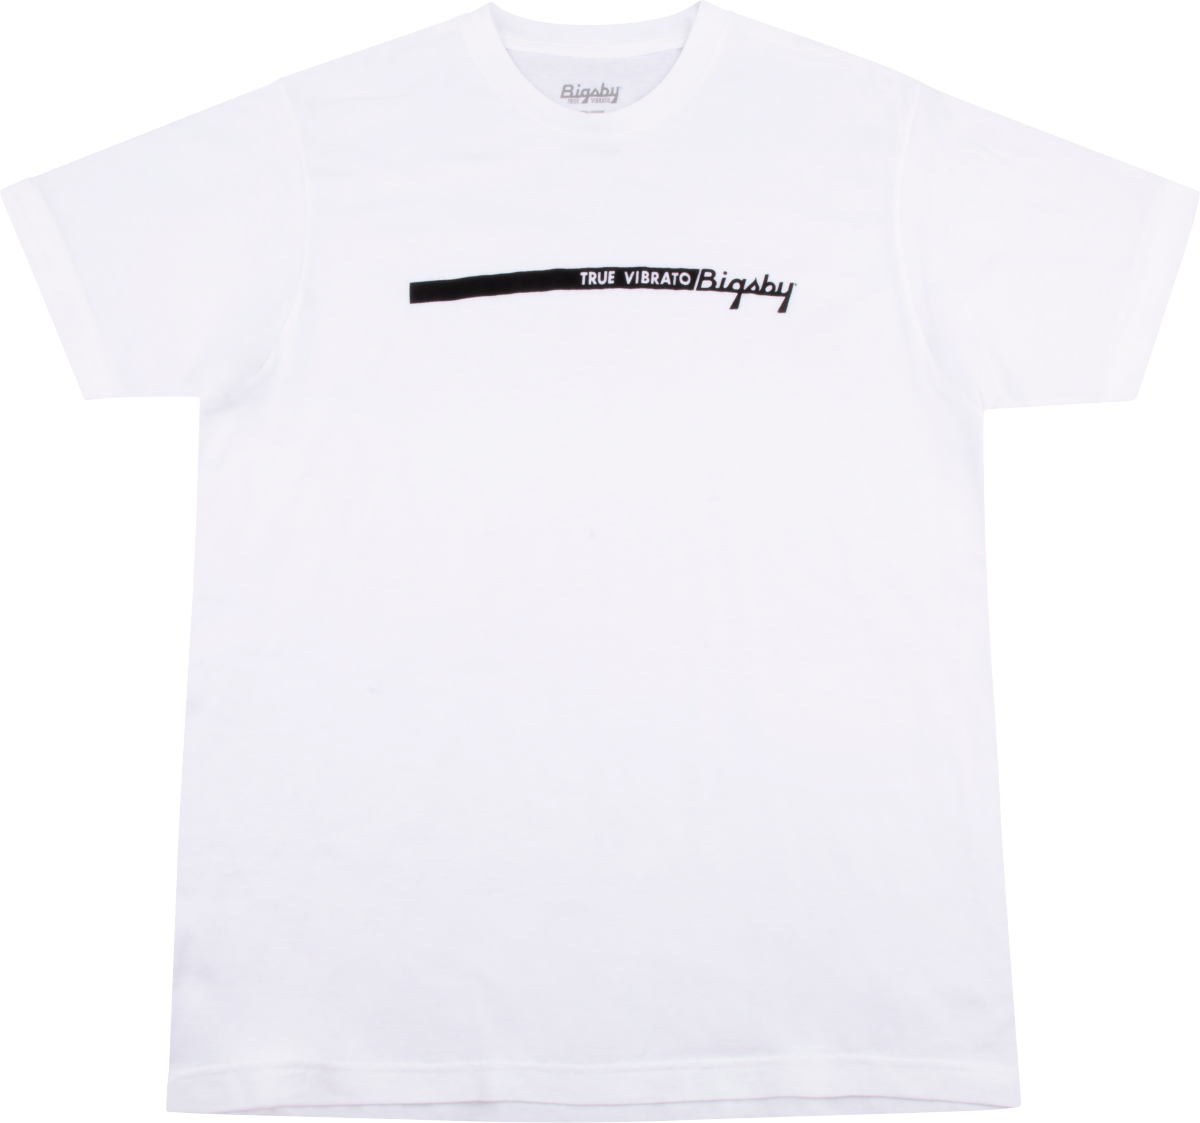 Bigsby True Vibrato Stripe T-shirt - M/L/XL